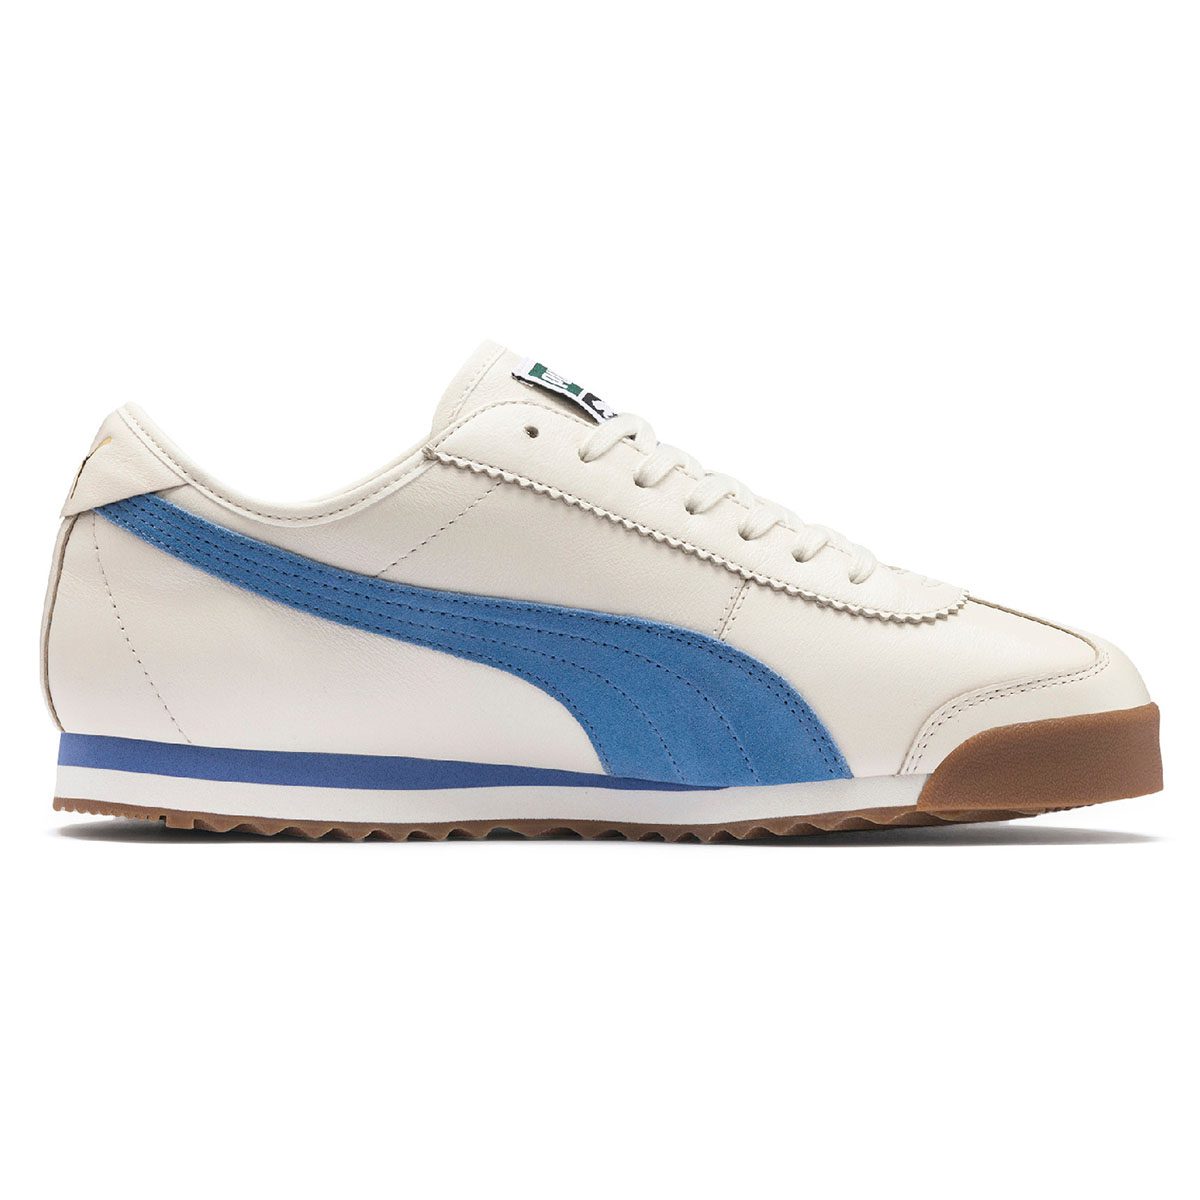 PUMA Men's Roma '68 OG Whisper White/Blue Yonder Sneakers 37060101 NEW ...